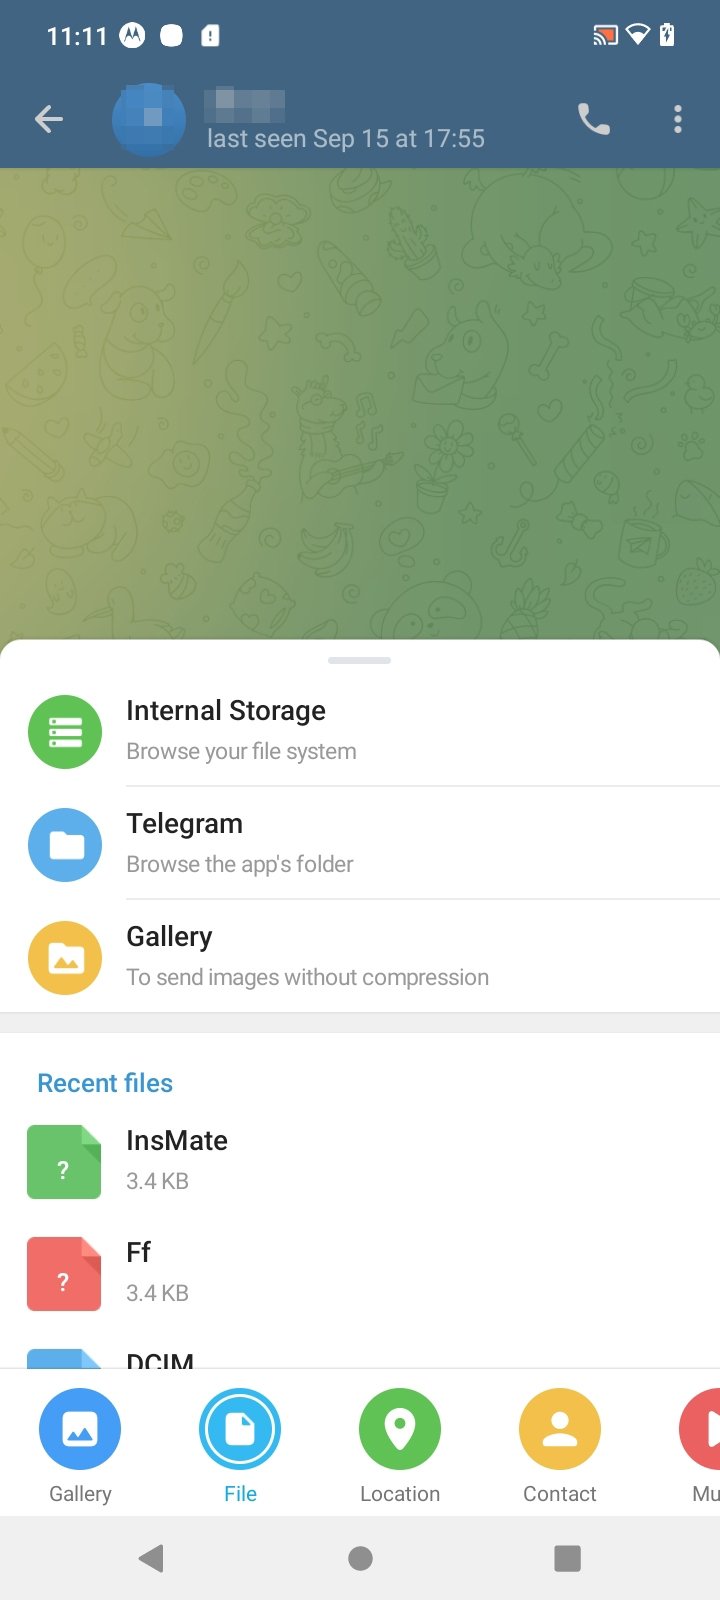 Telegram download apk